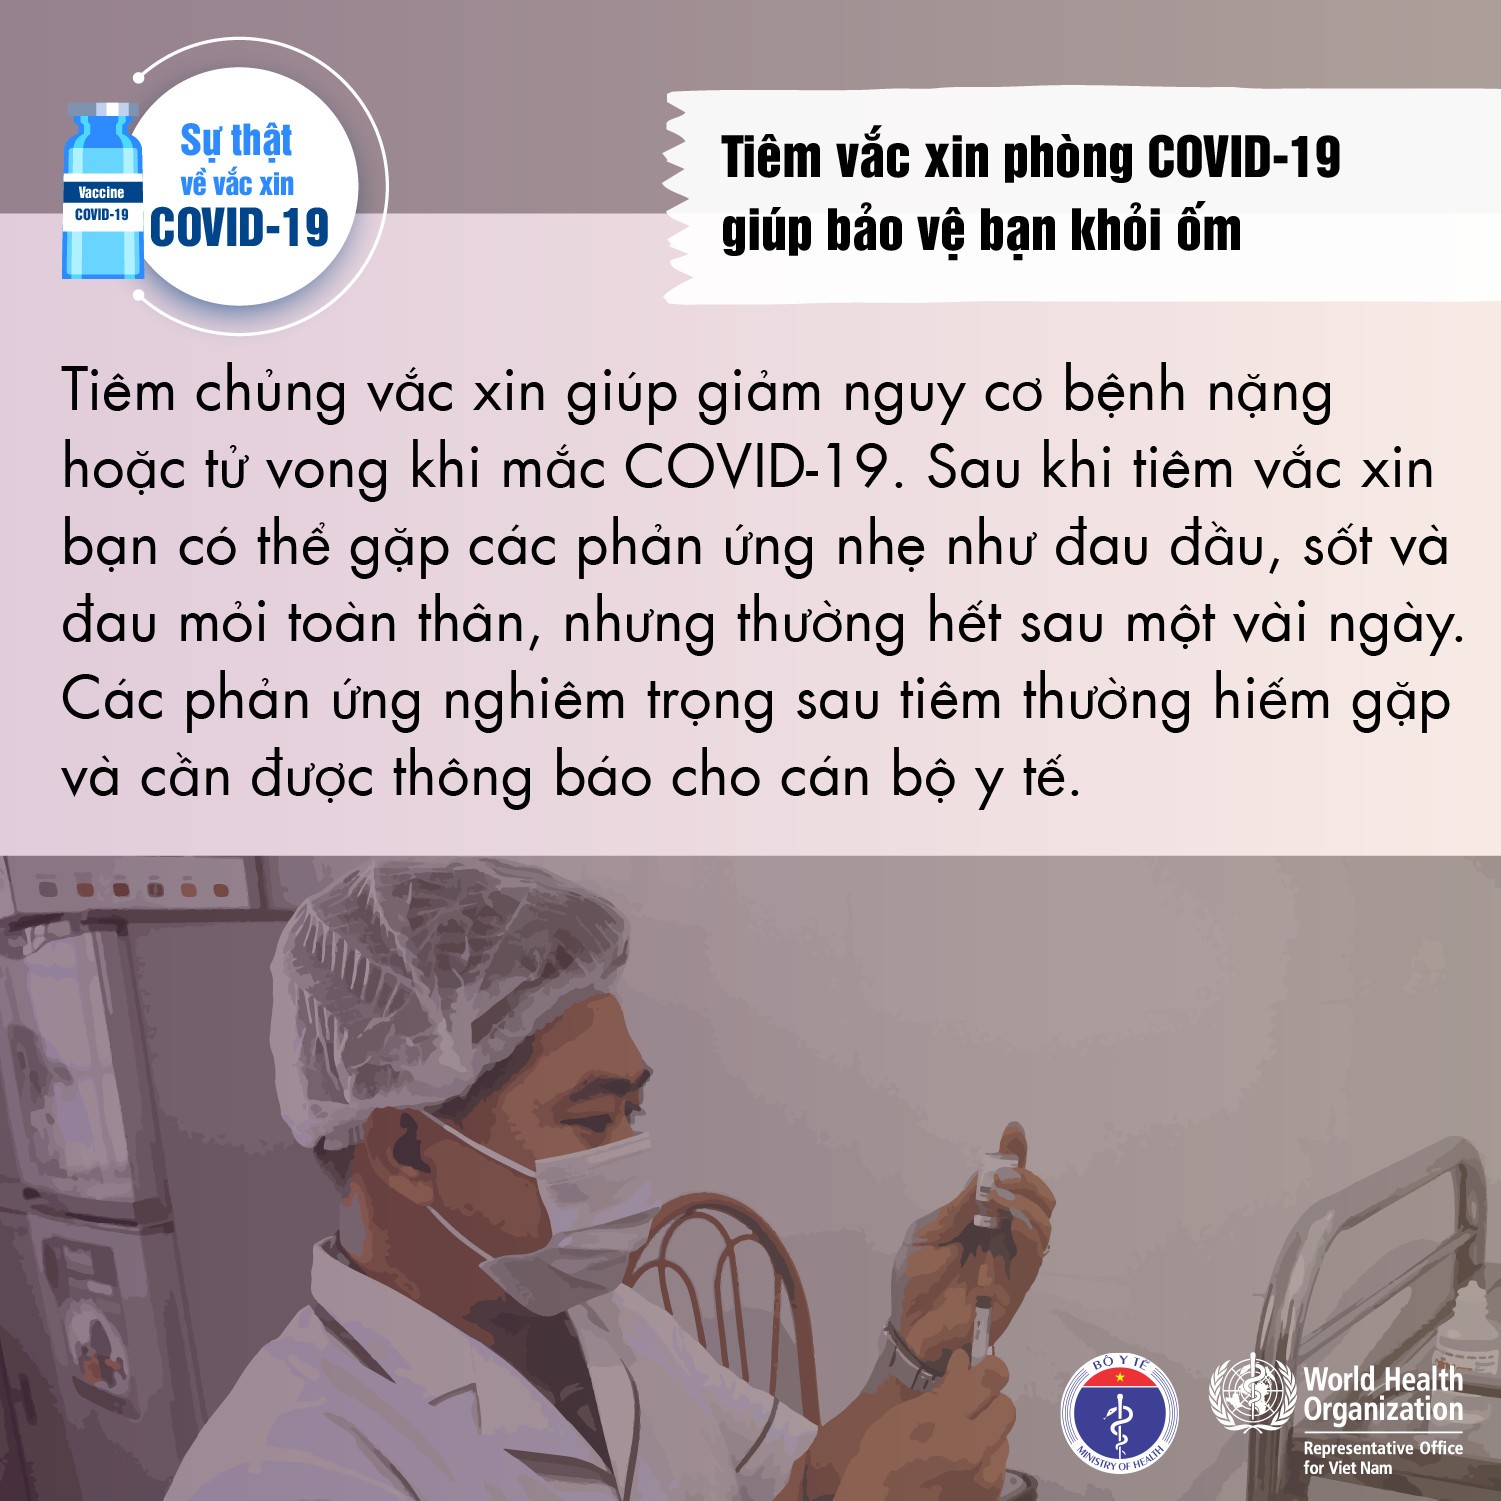 Sự thật về Vắc xin COVID-19